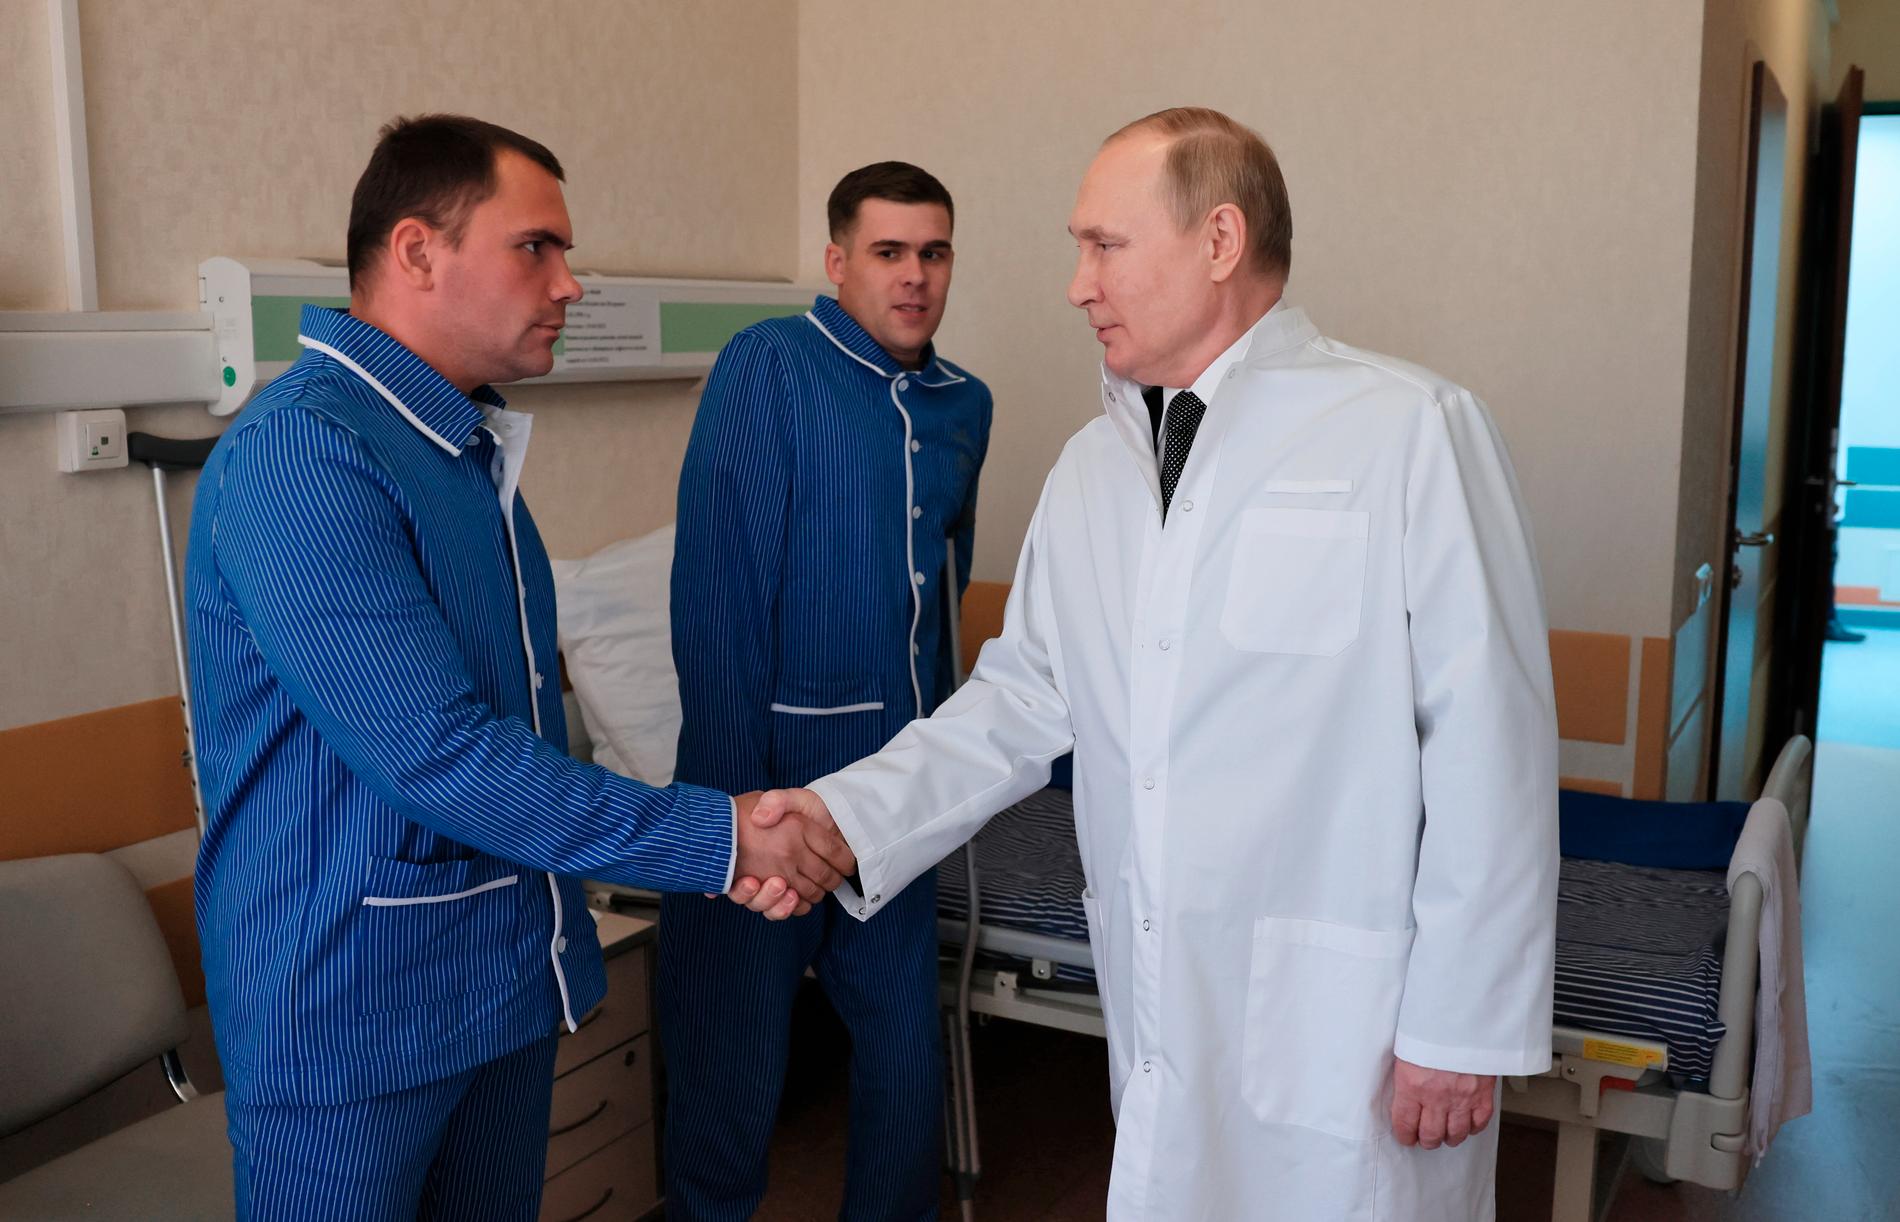 Här hälsar Putin på soldater i armépyjamas.